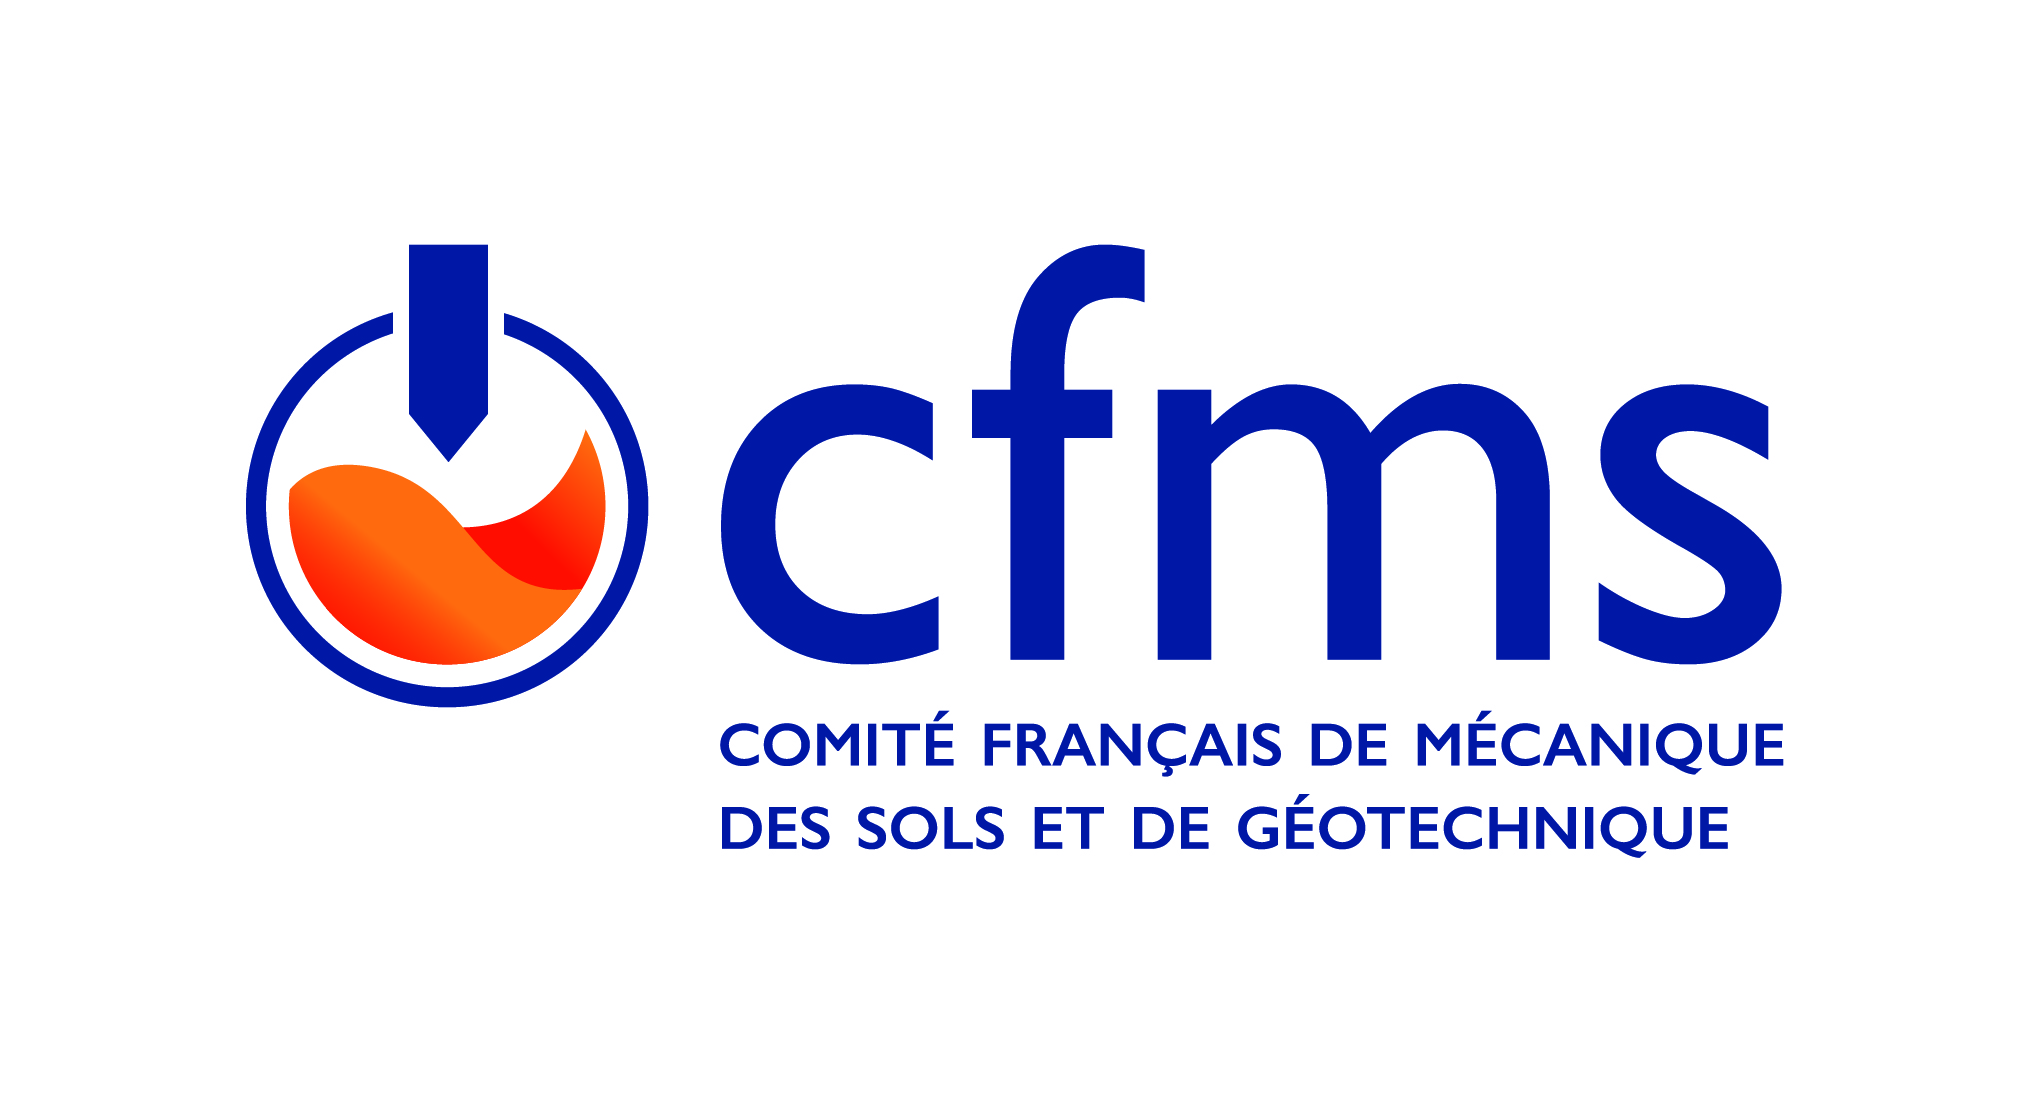 Logo CFMS